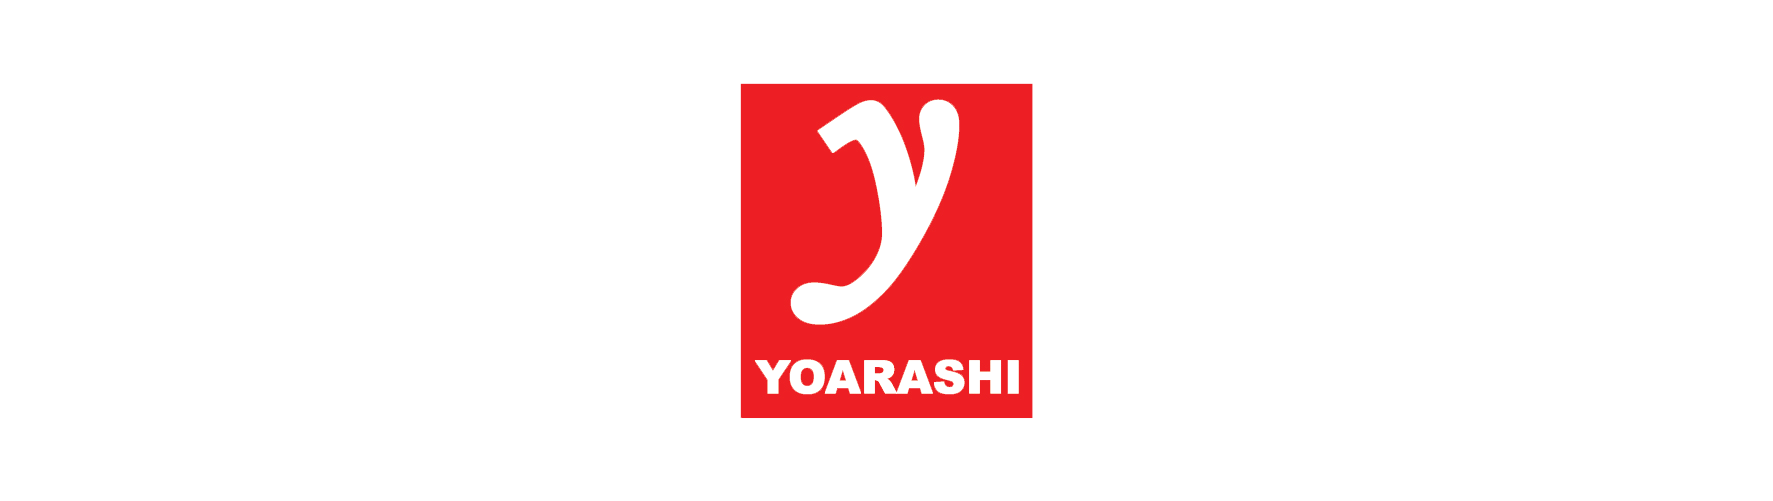 Yorashi